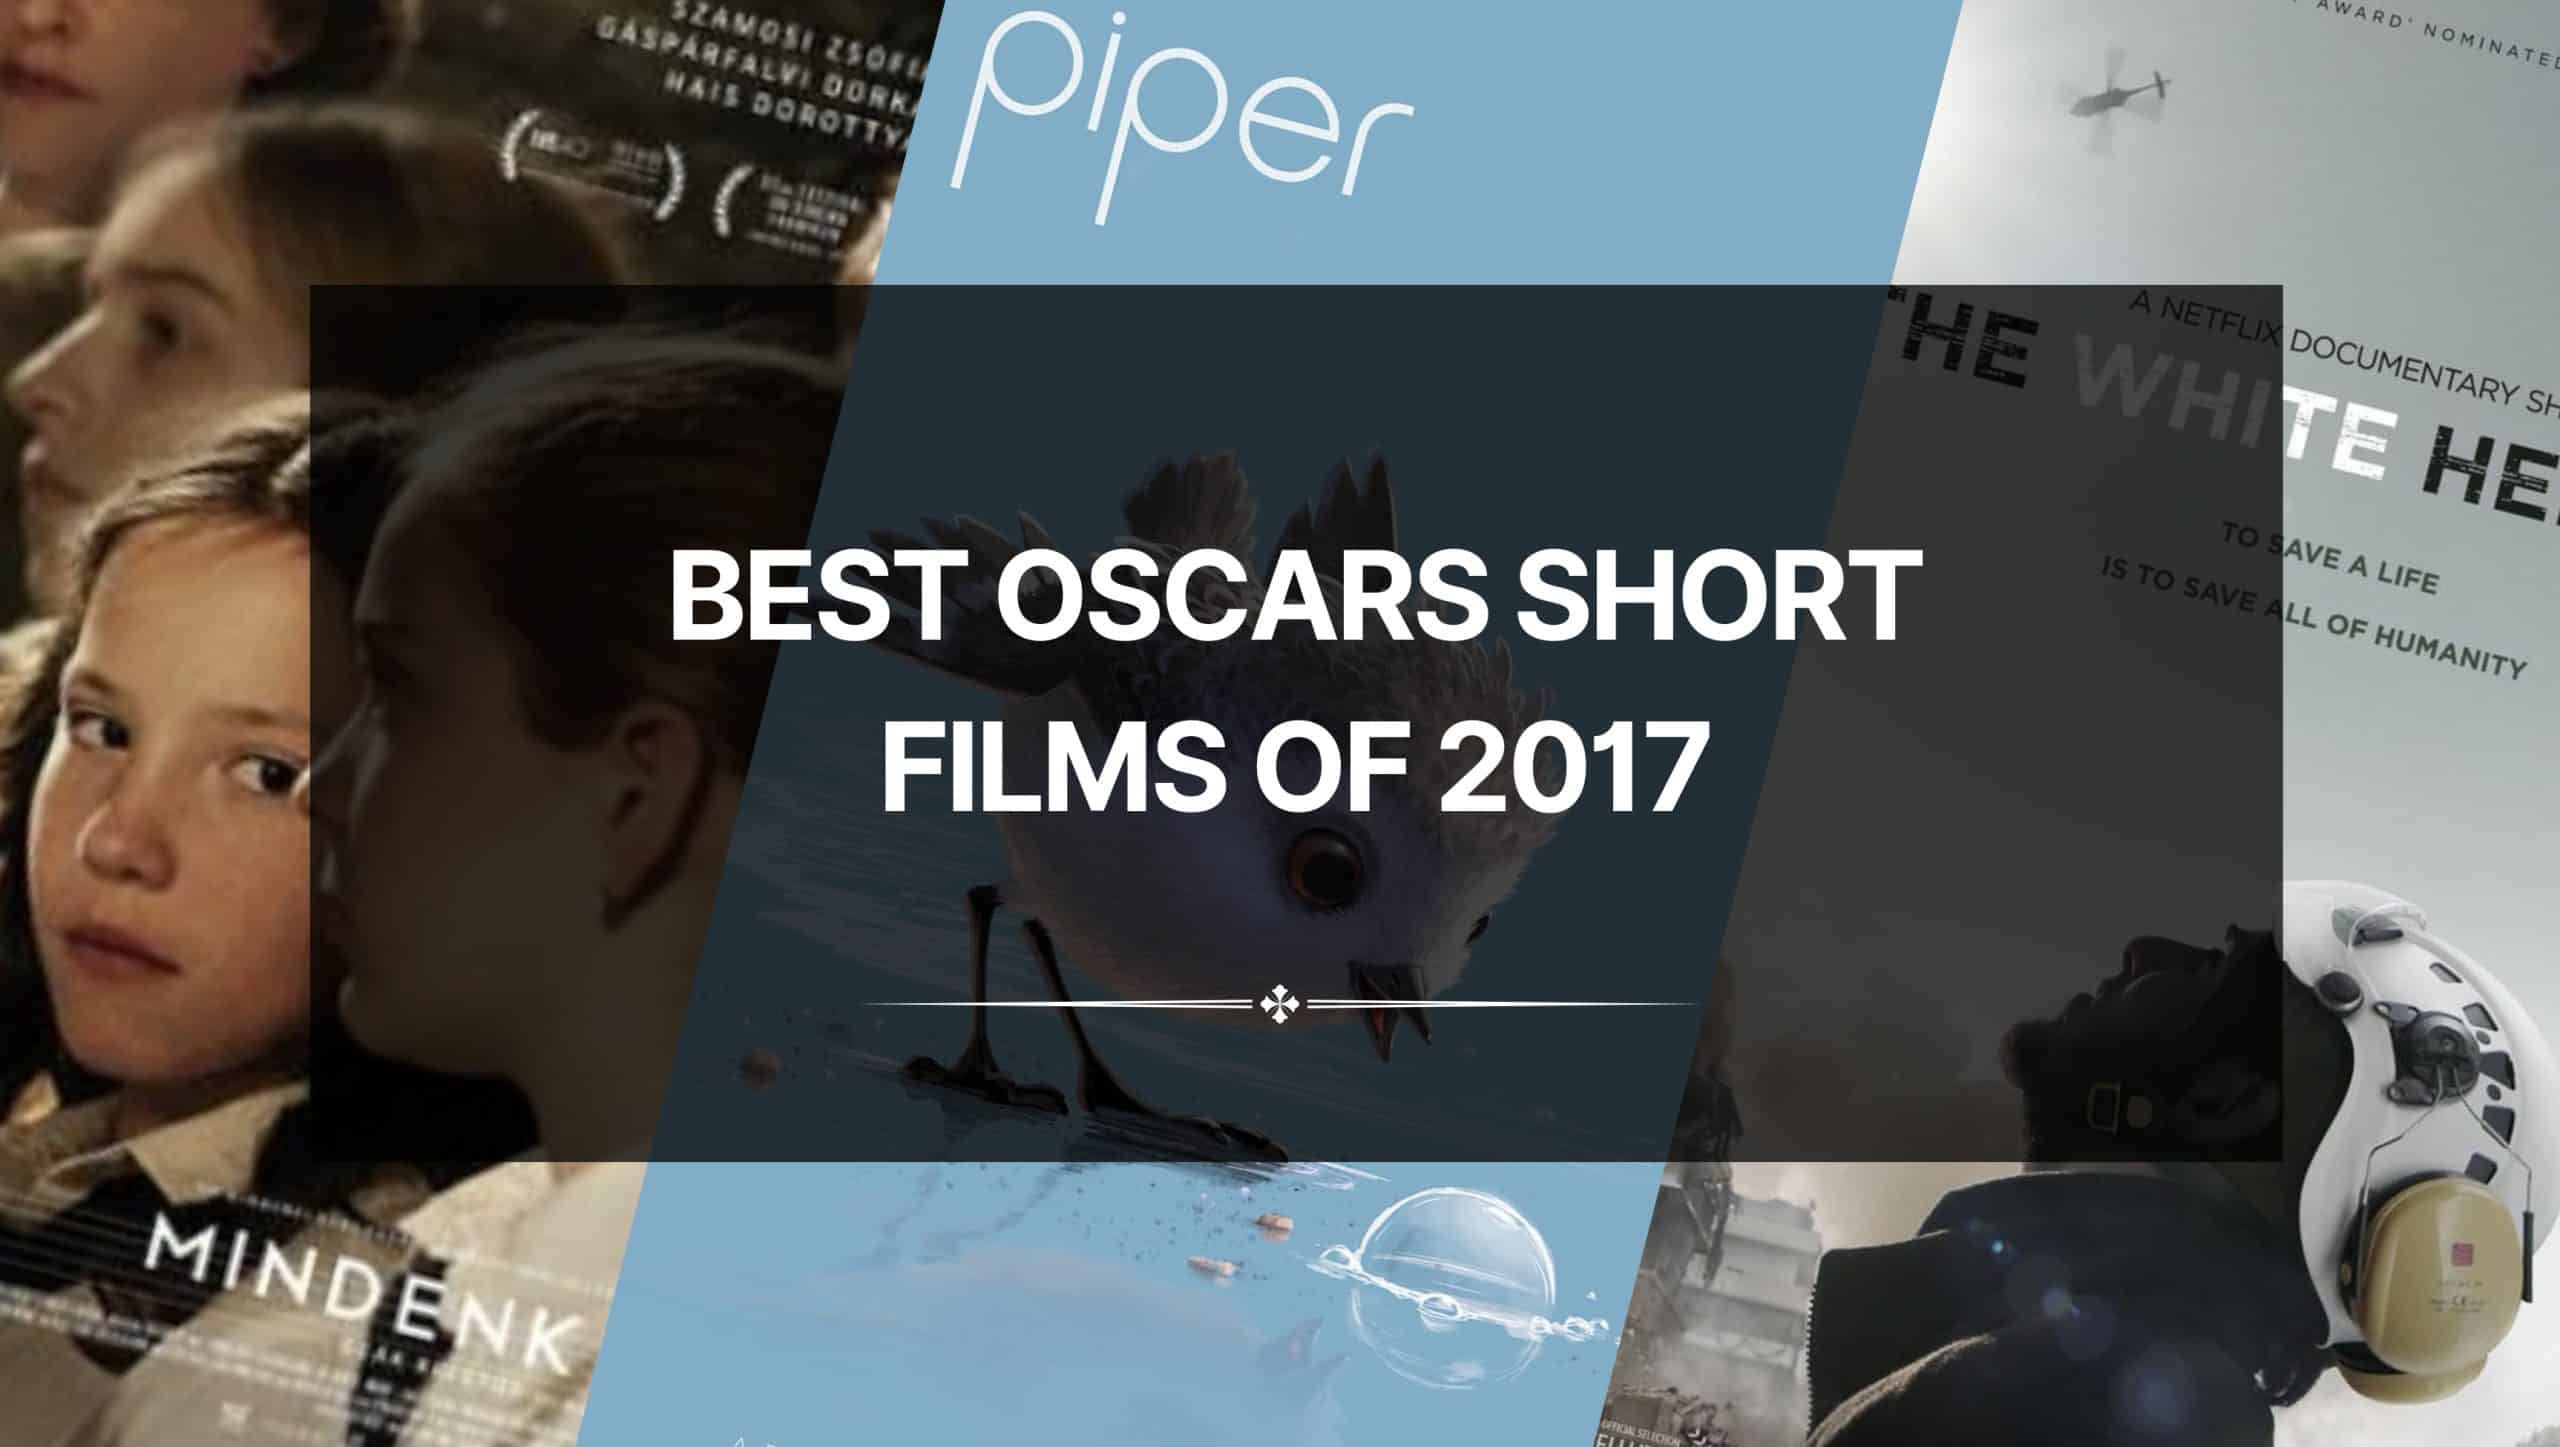 The Best Oscars Short Films of 2017 – A Stunning List